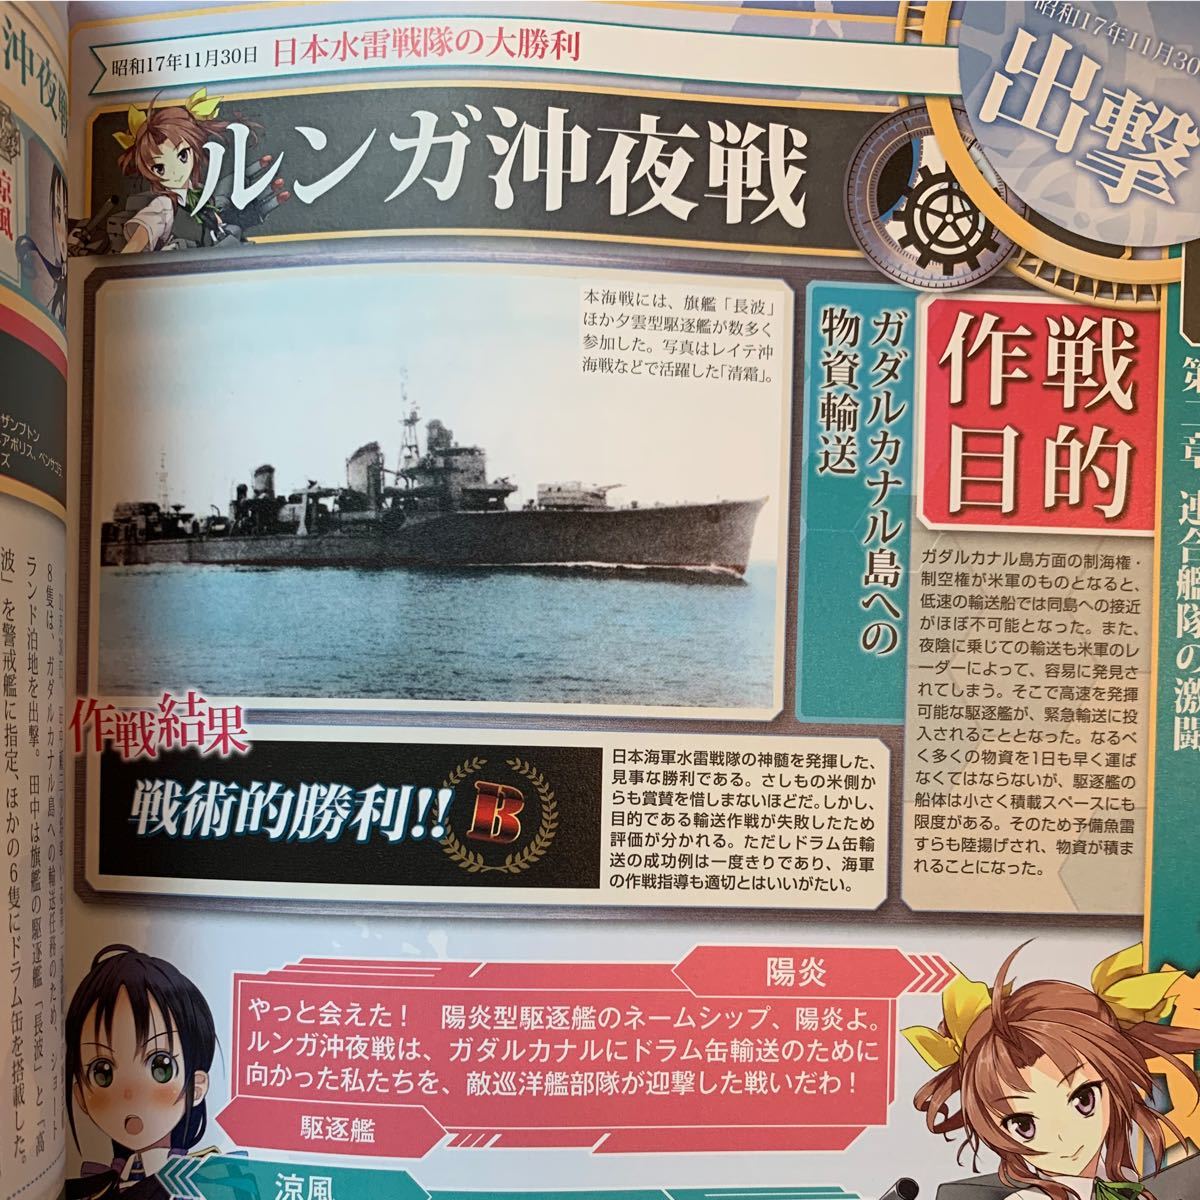 日本海軍 「艦これ」 公式作戦記録 宝島社 付録ポスター無し